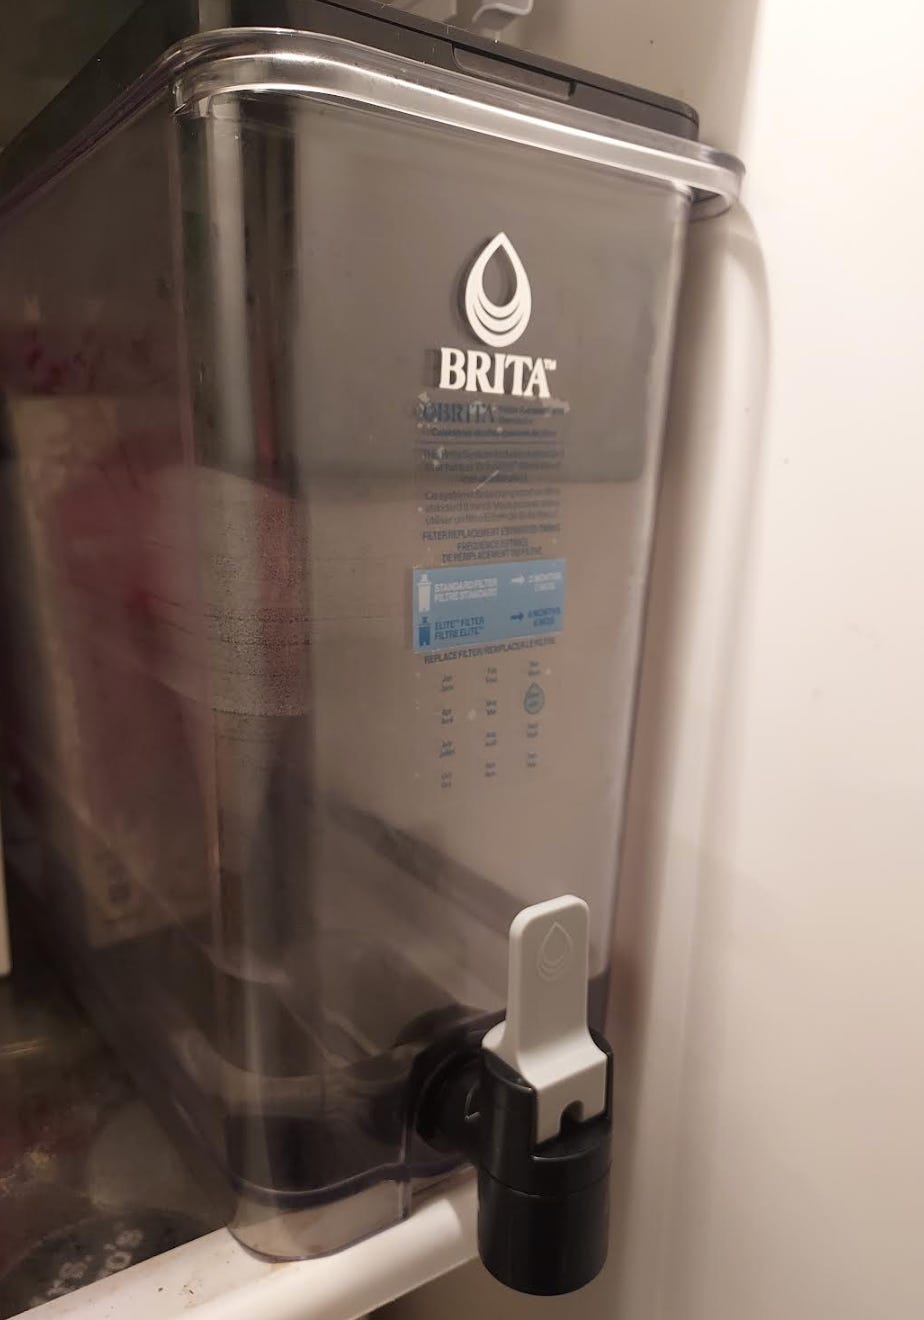 A close-up of a Brita filter in a refrigerator.